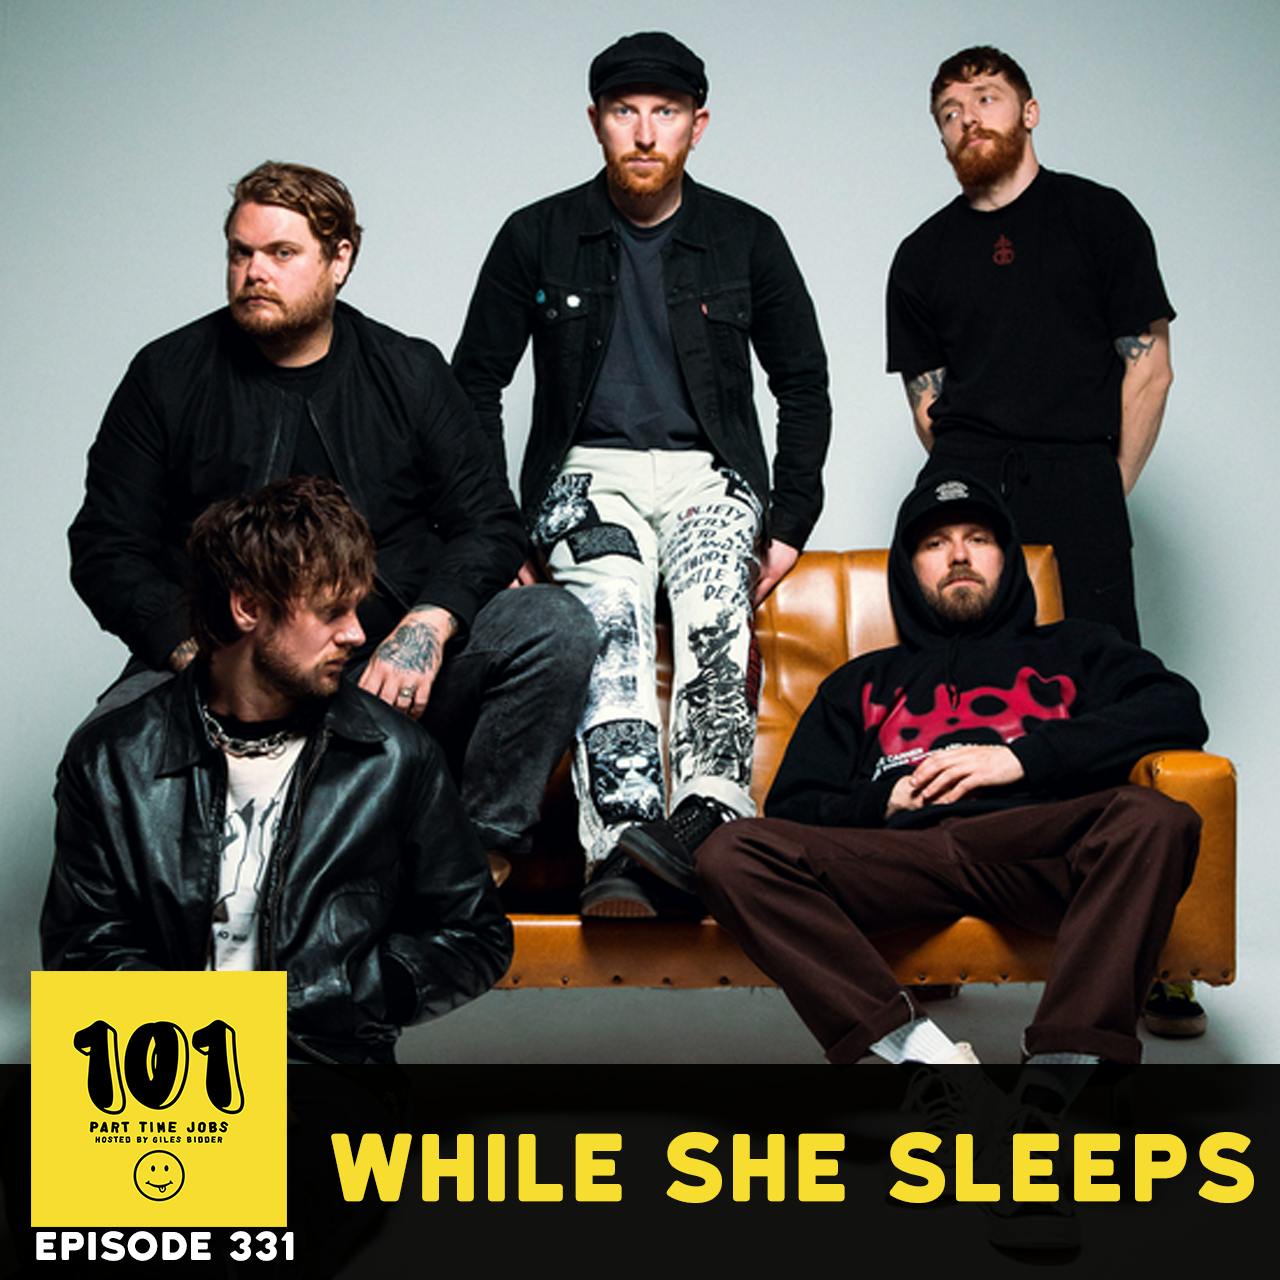 While She Sleeps - The DIY arena band